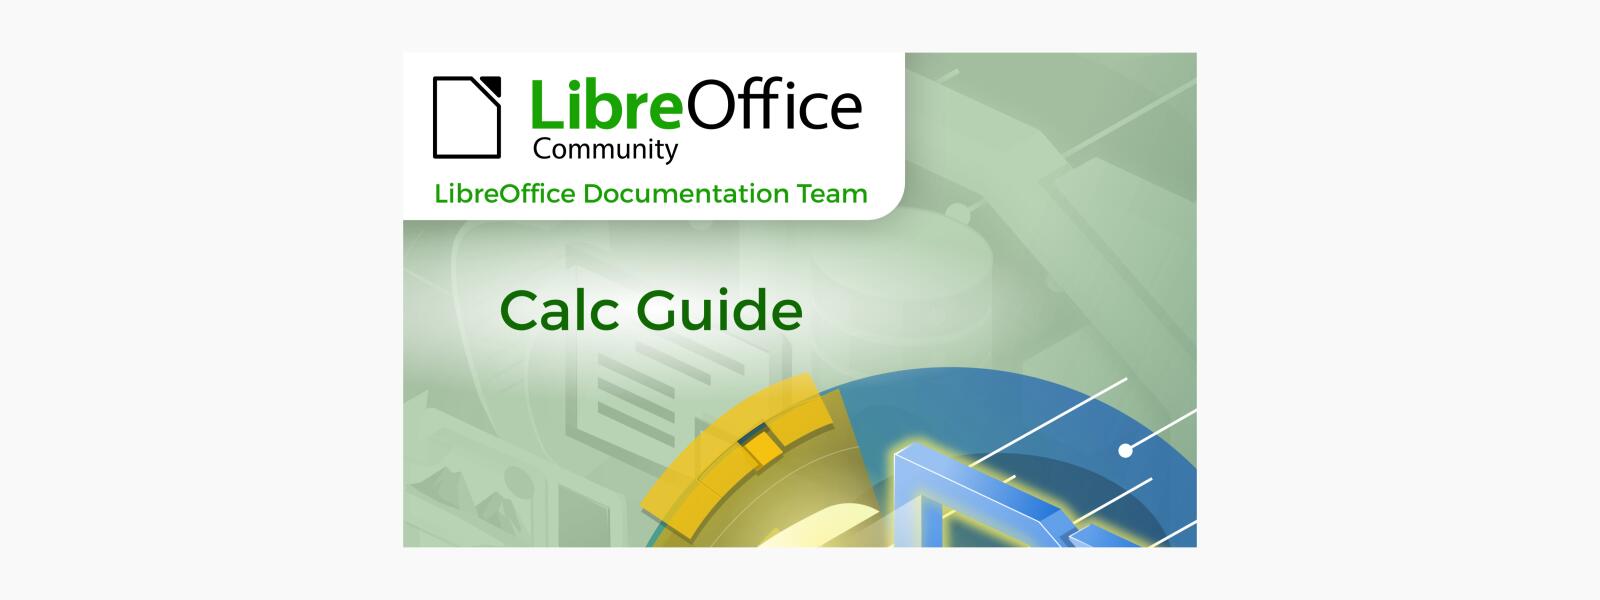 Guía de LibreOffice Calc 7.4